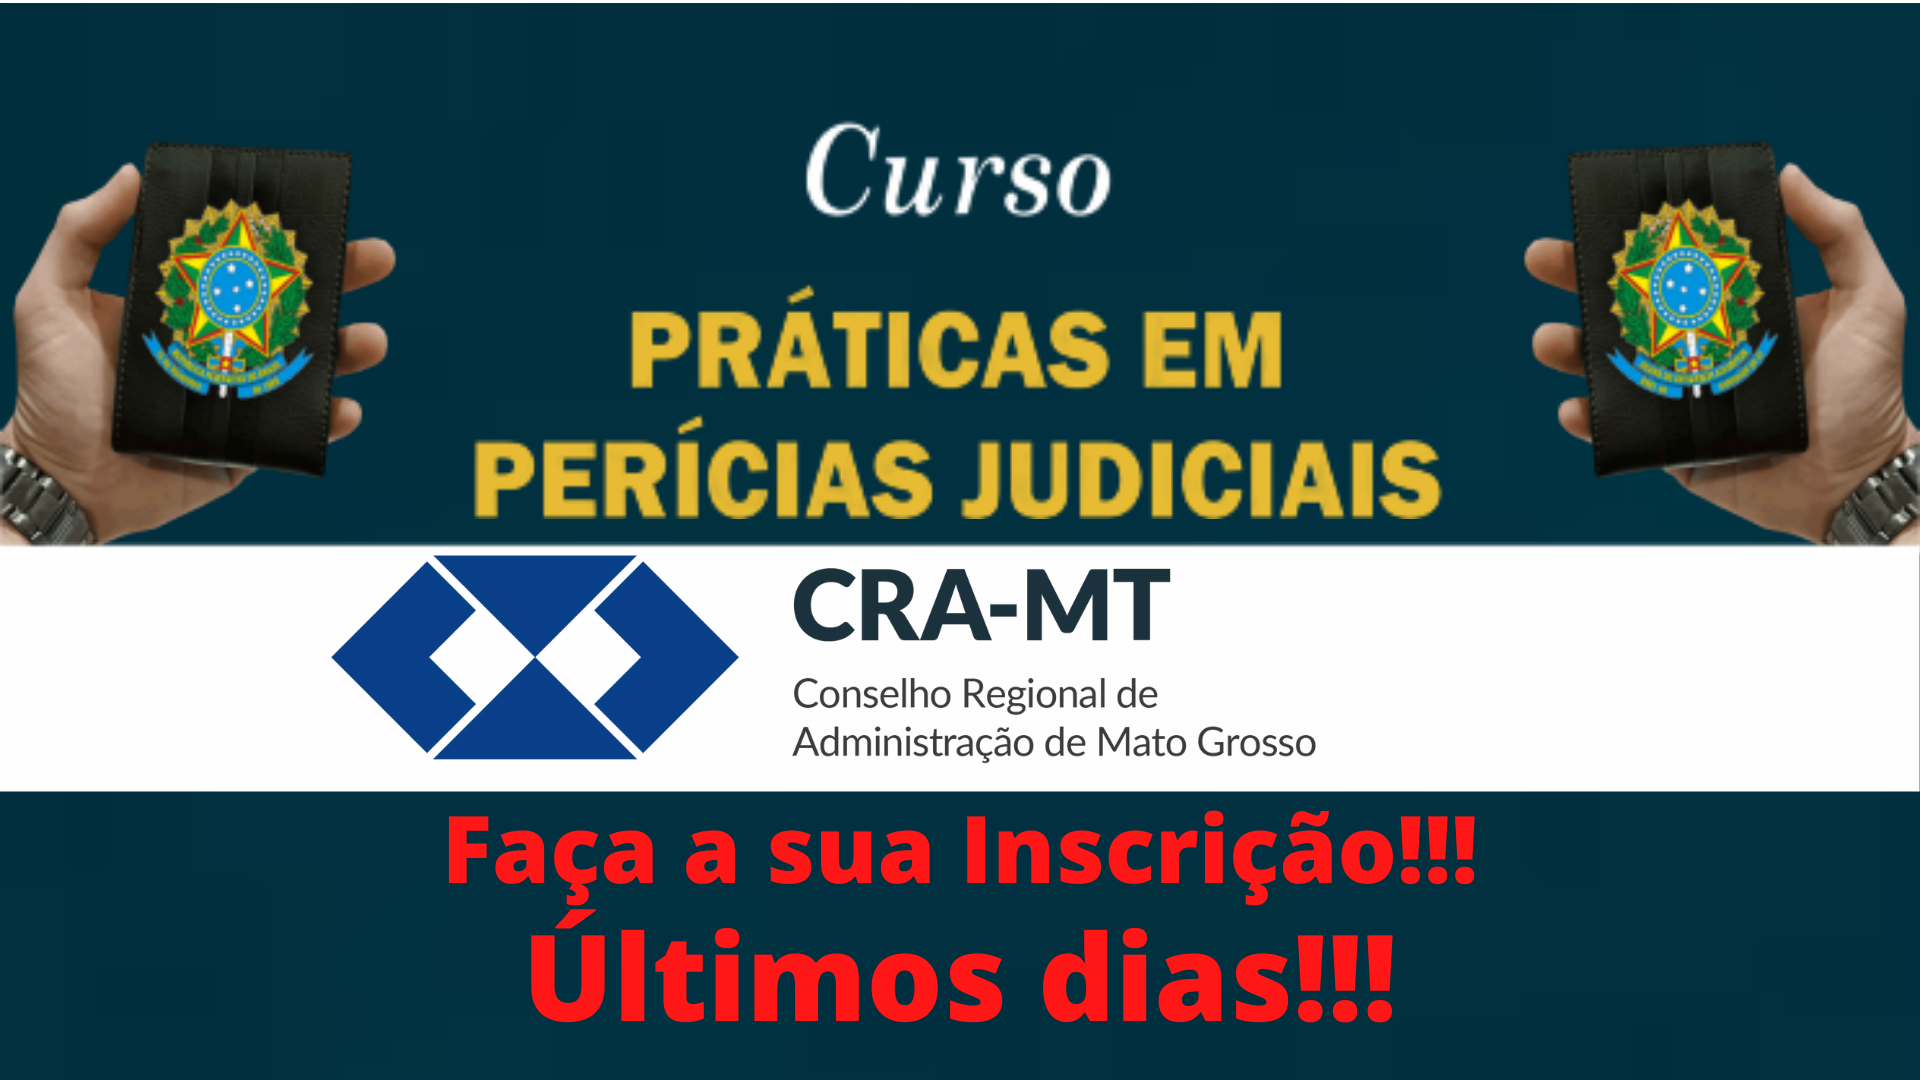 You are currently viewing Curso – Práticas em Perícias Judiciais